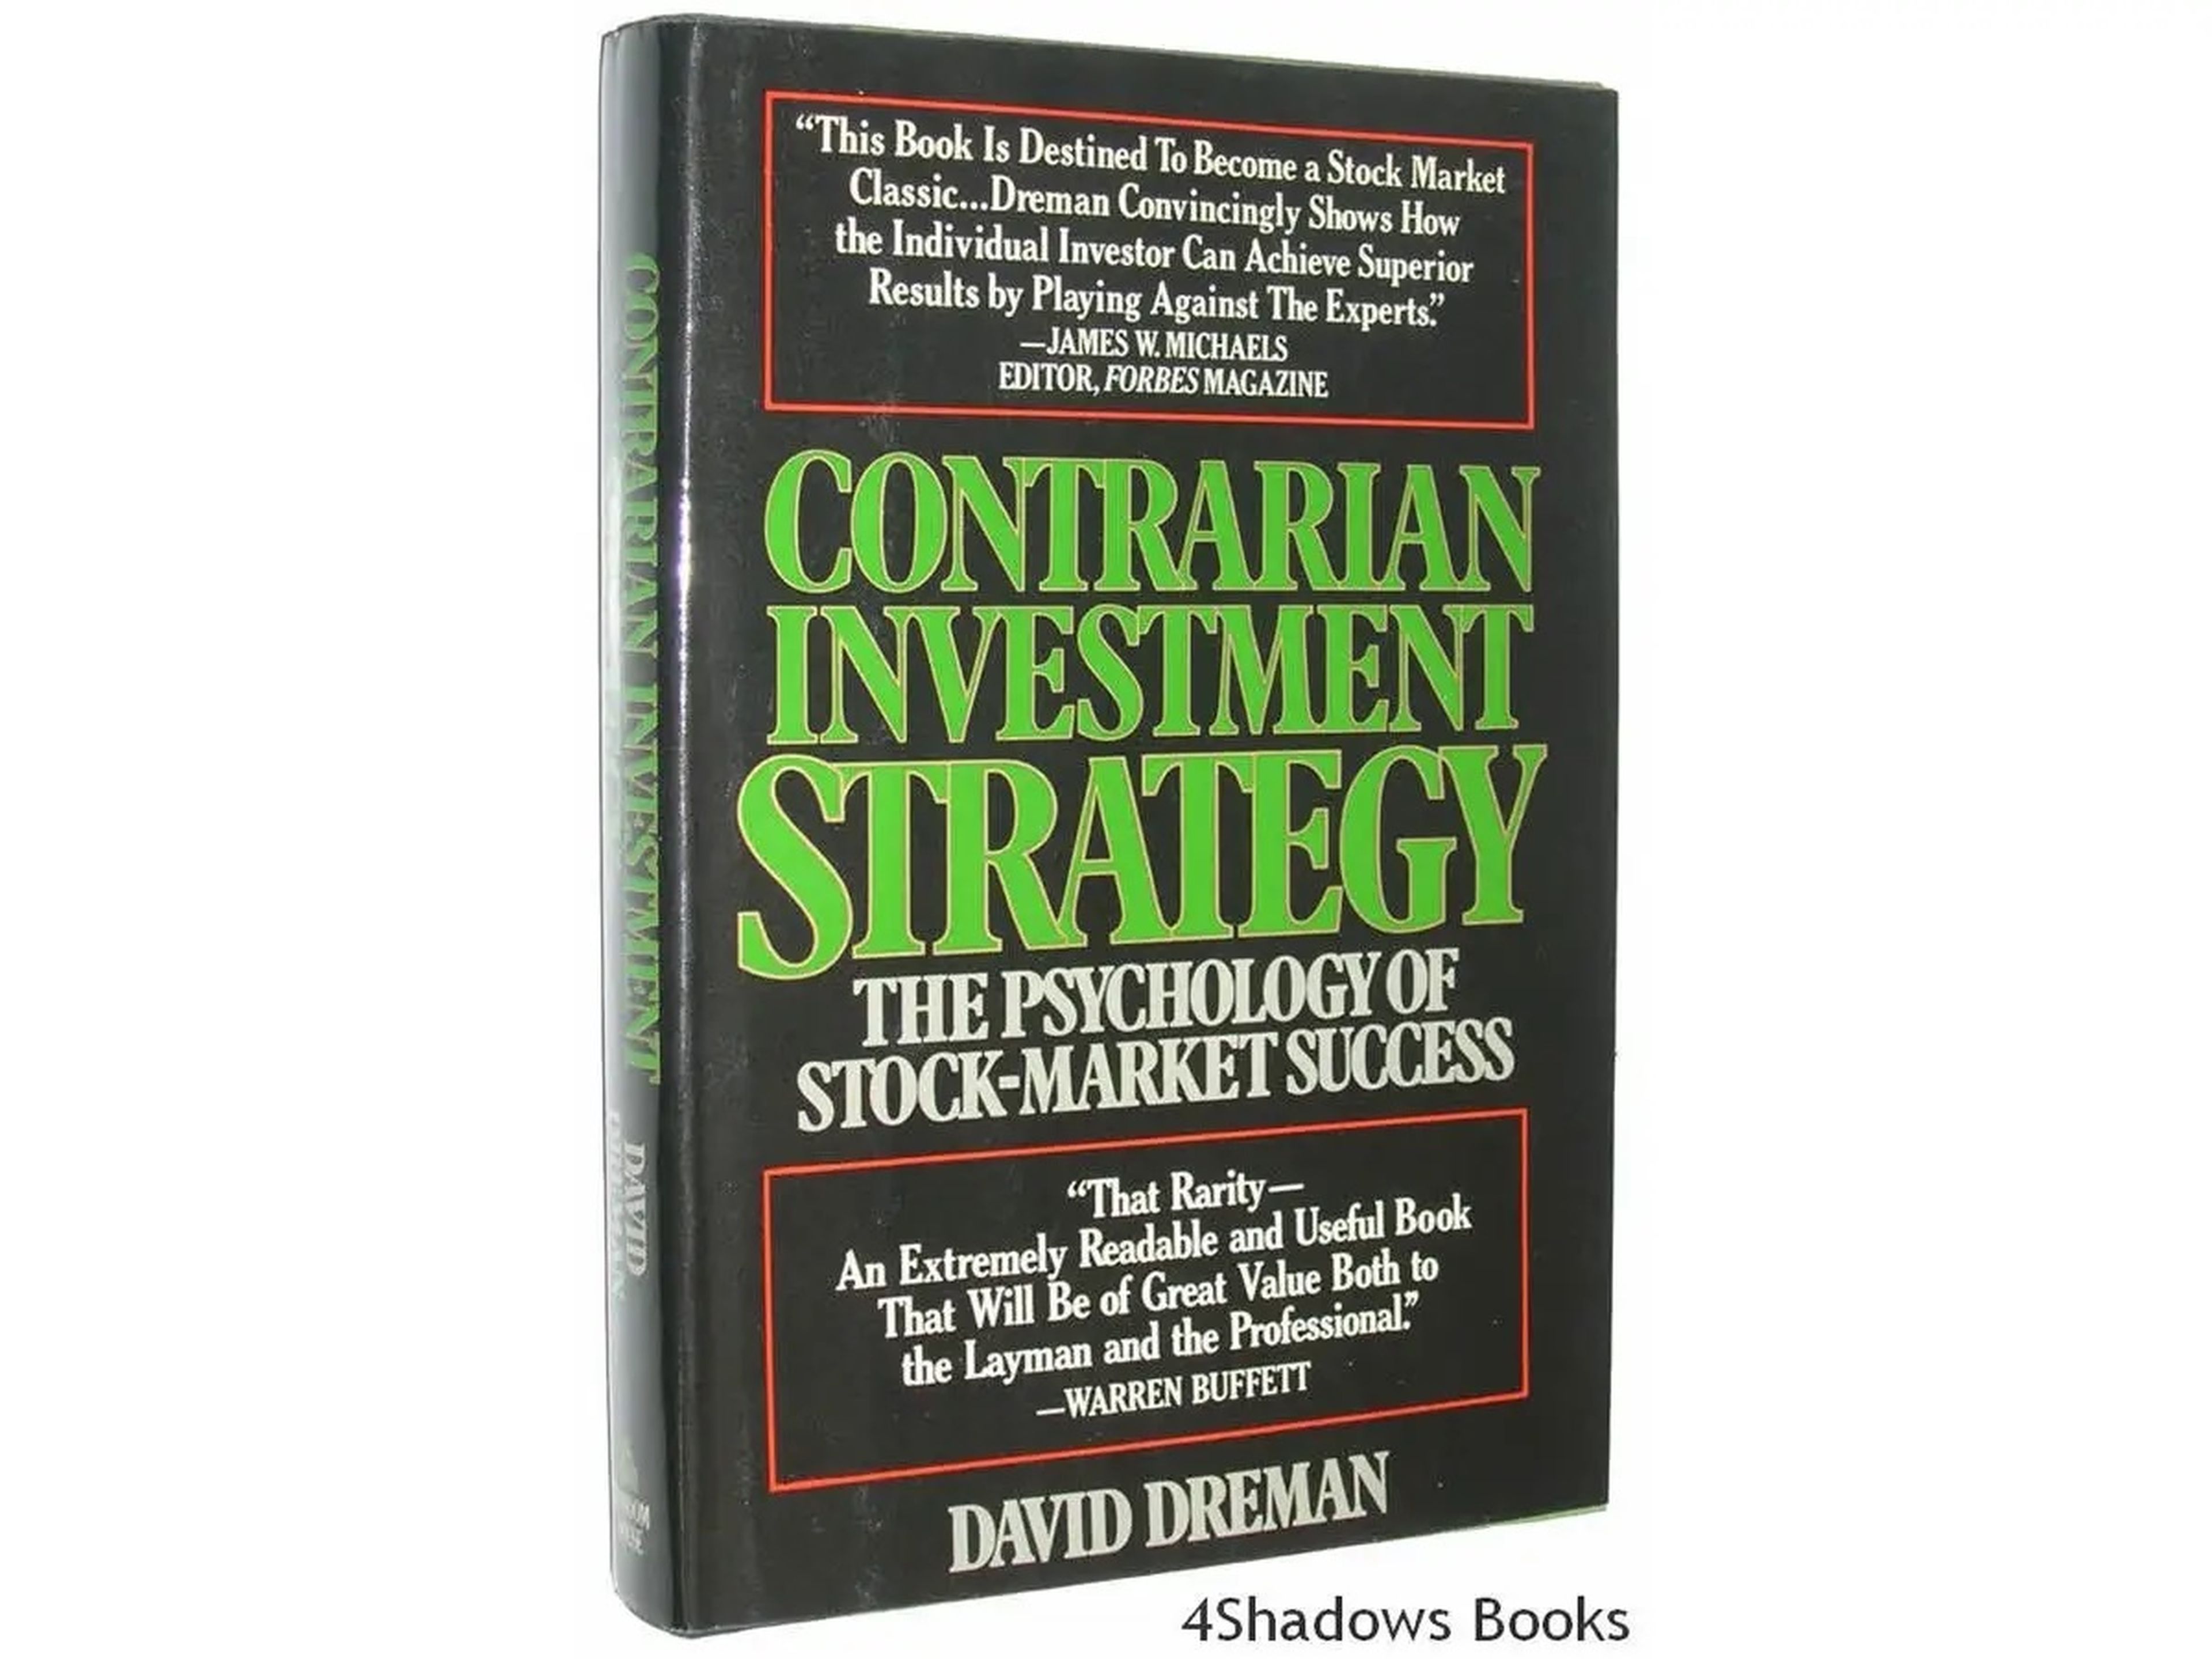 Estrategia de inversión contraria: La psicología del éxito bursátil, de David Dreman.